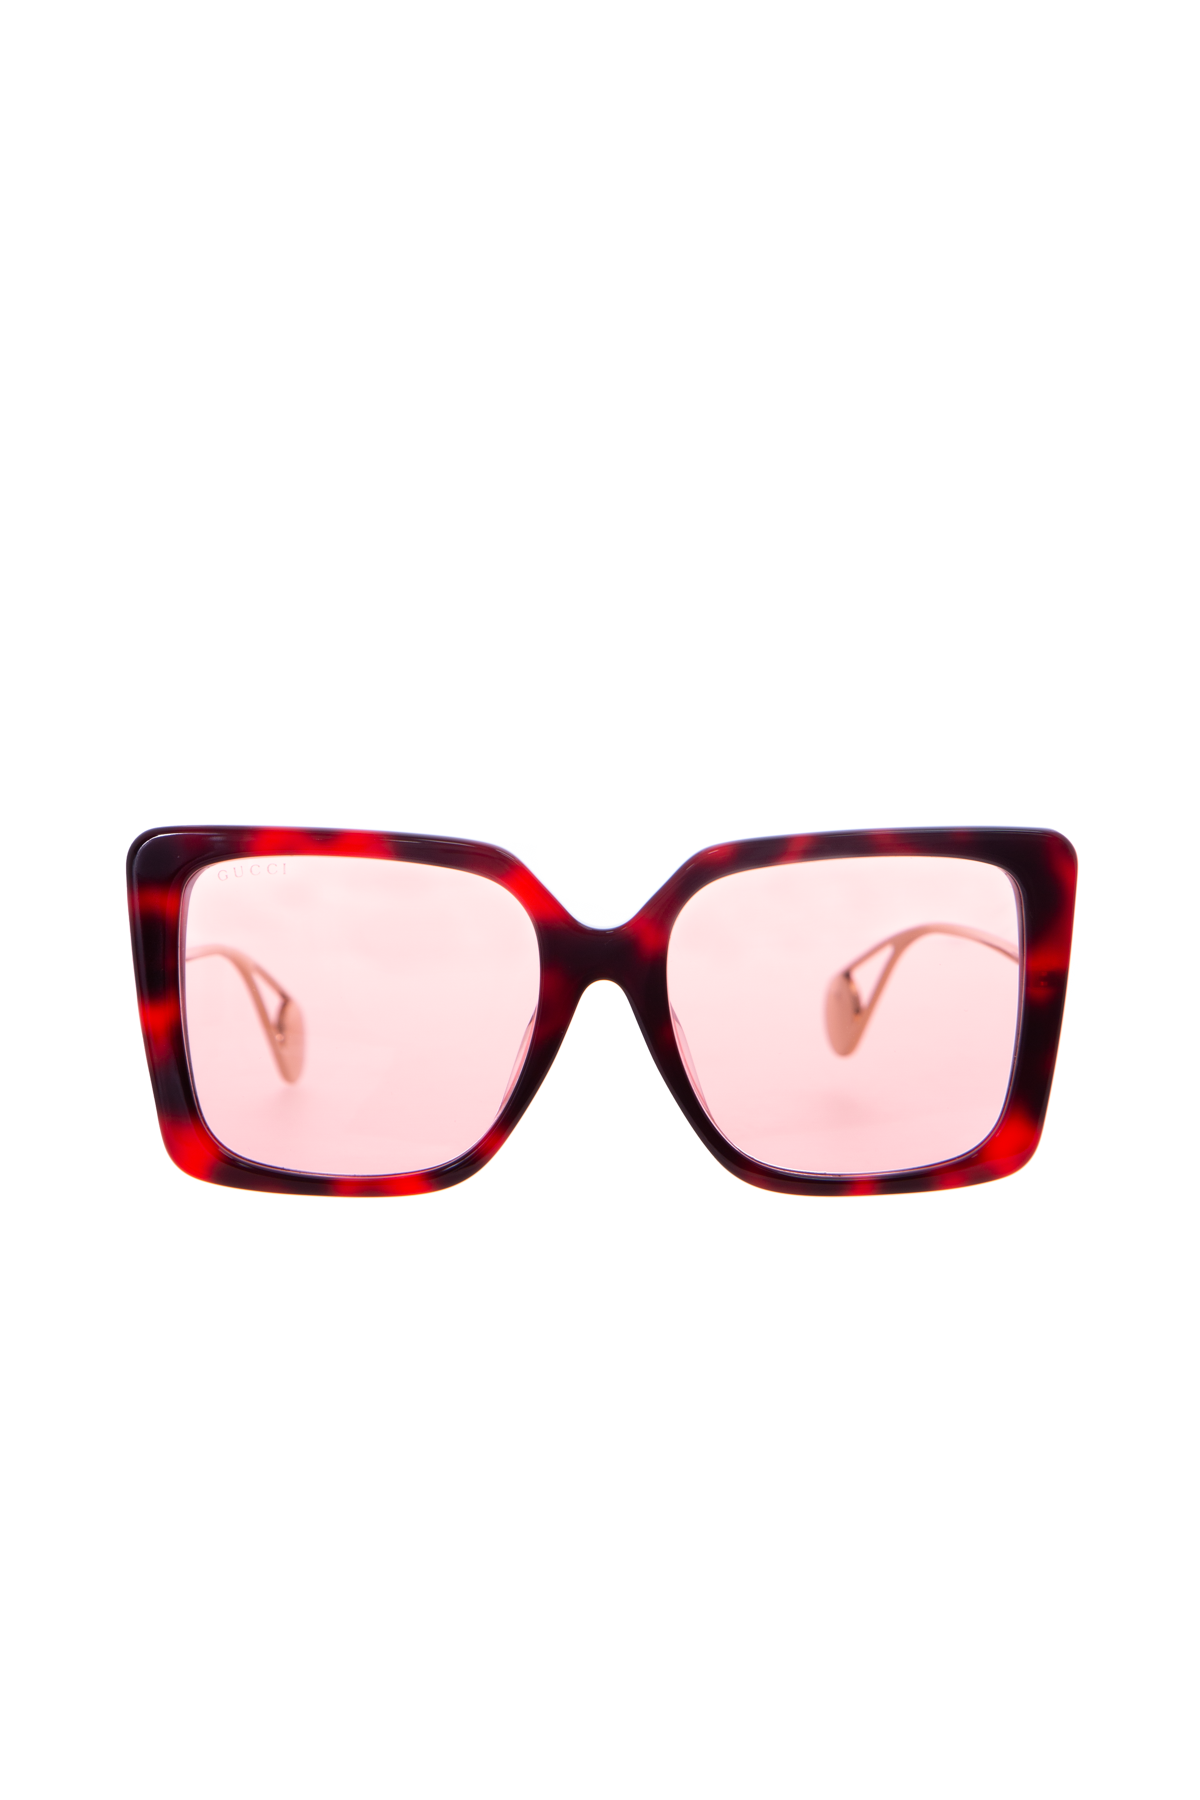 Gucci Red Tortoise Square Sunglasses